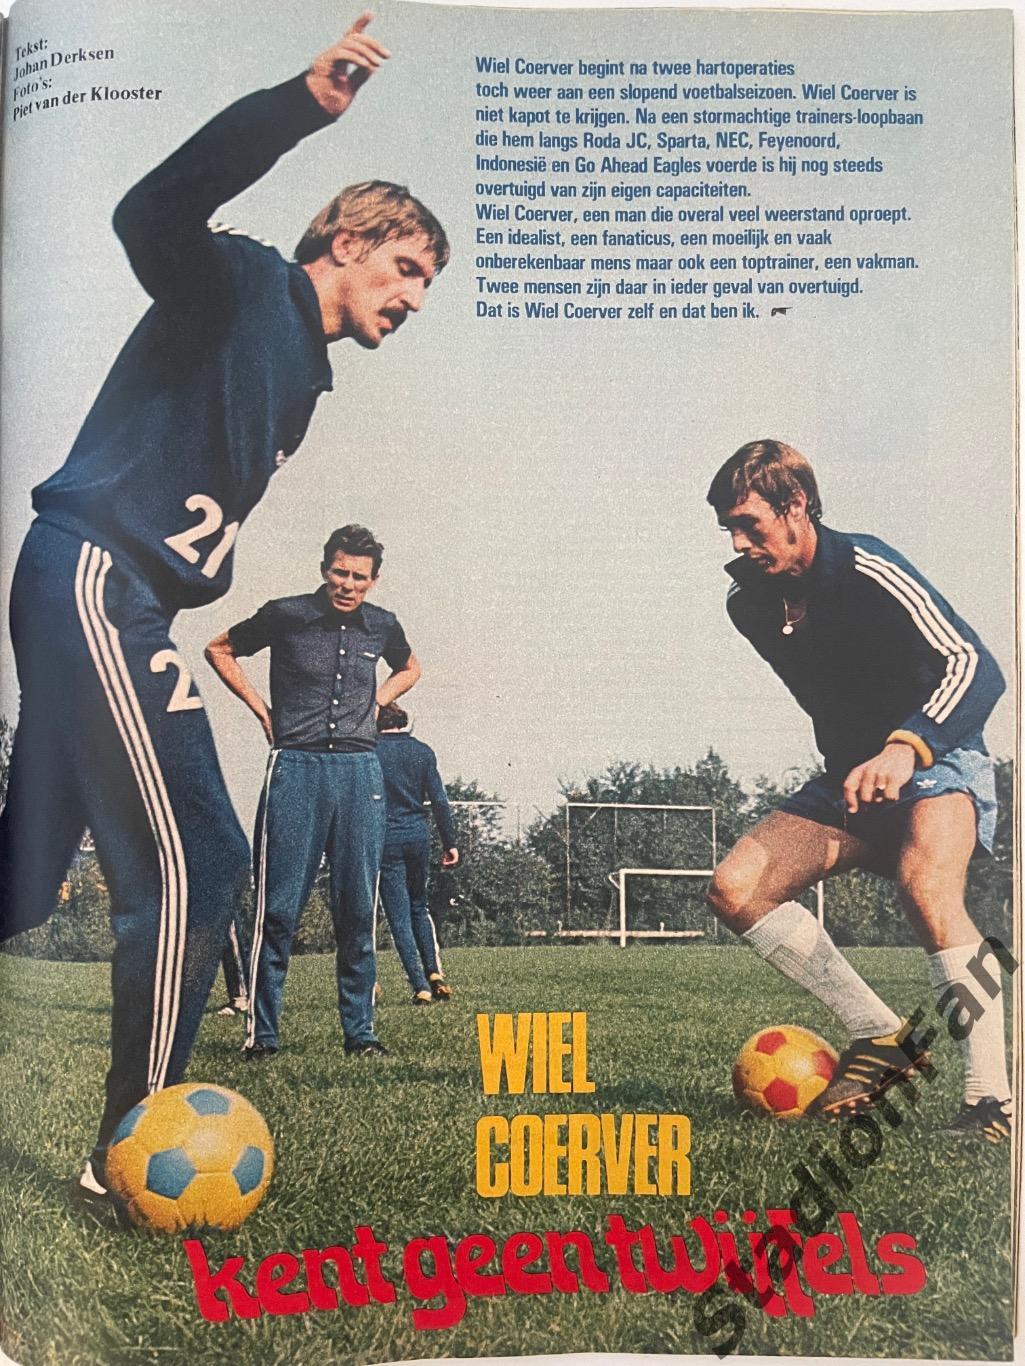 Журнал Voetbal nr.32 - 1977 год. 2